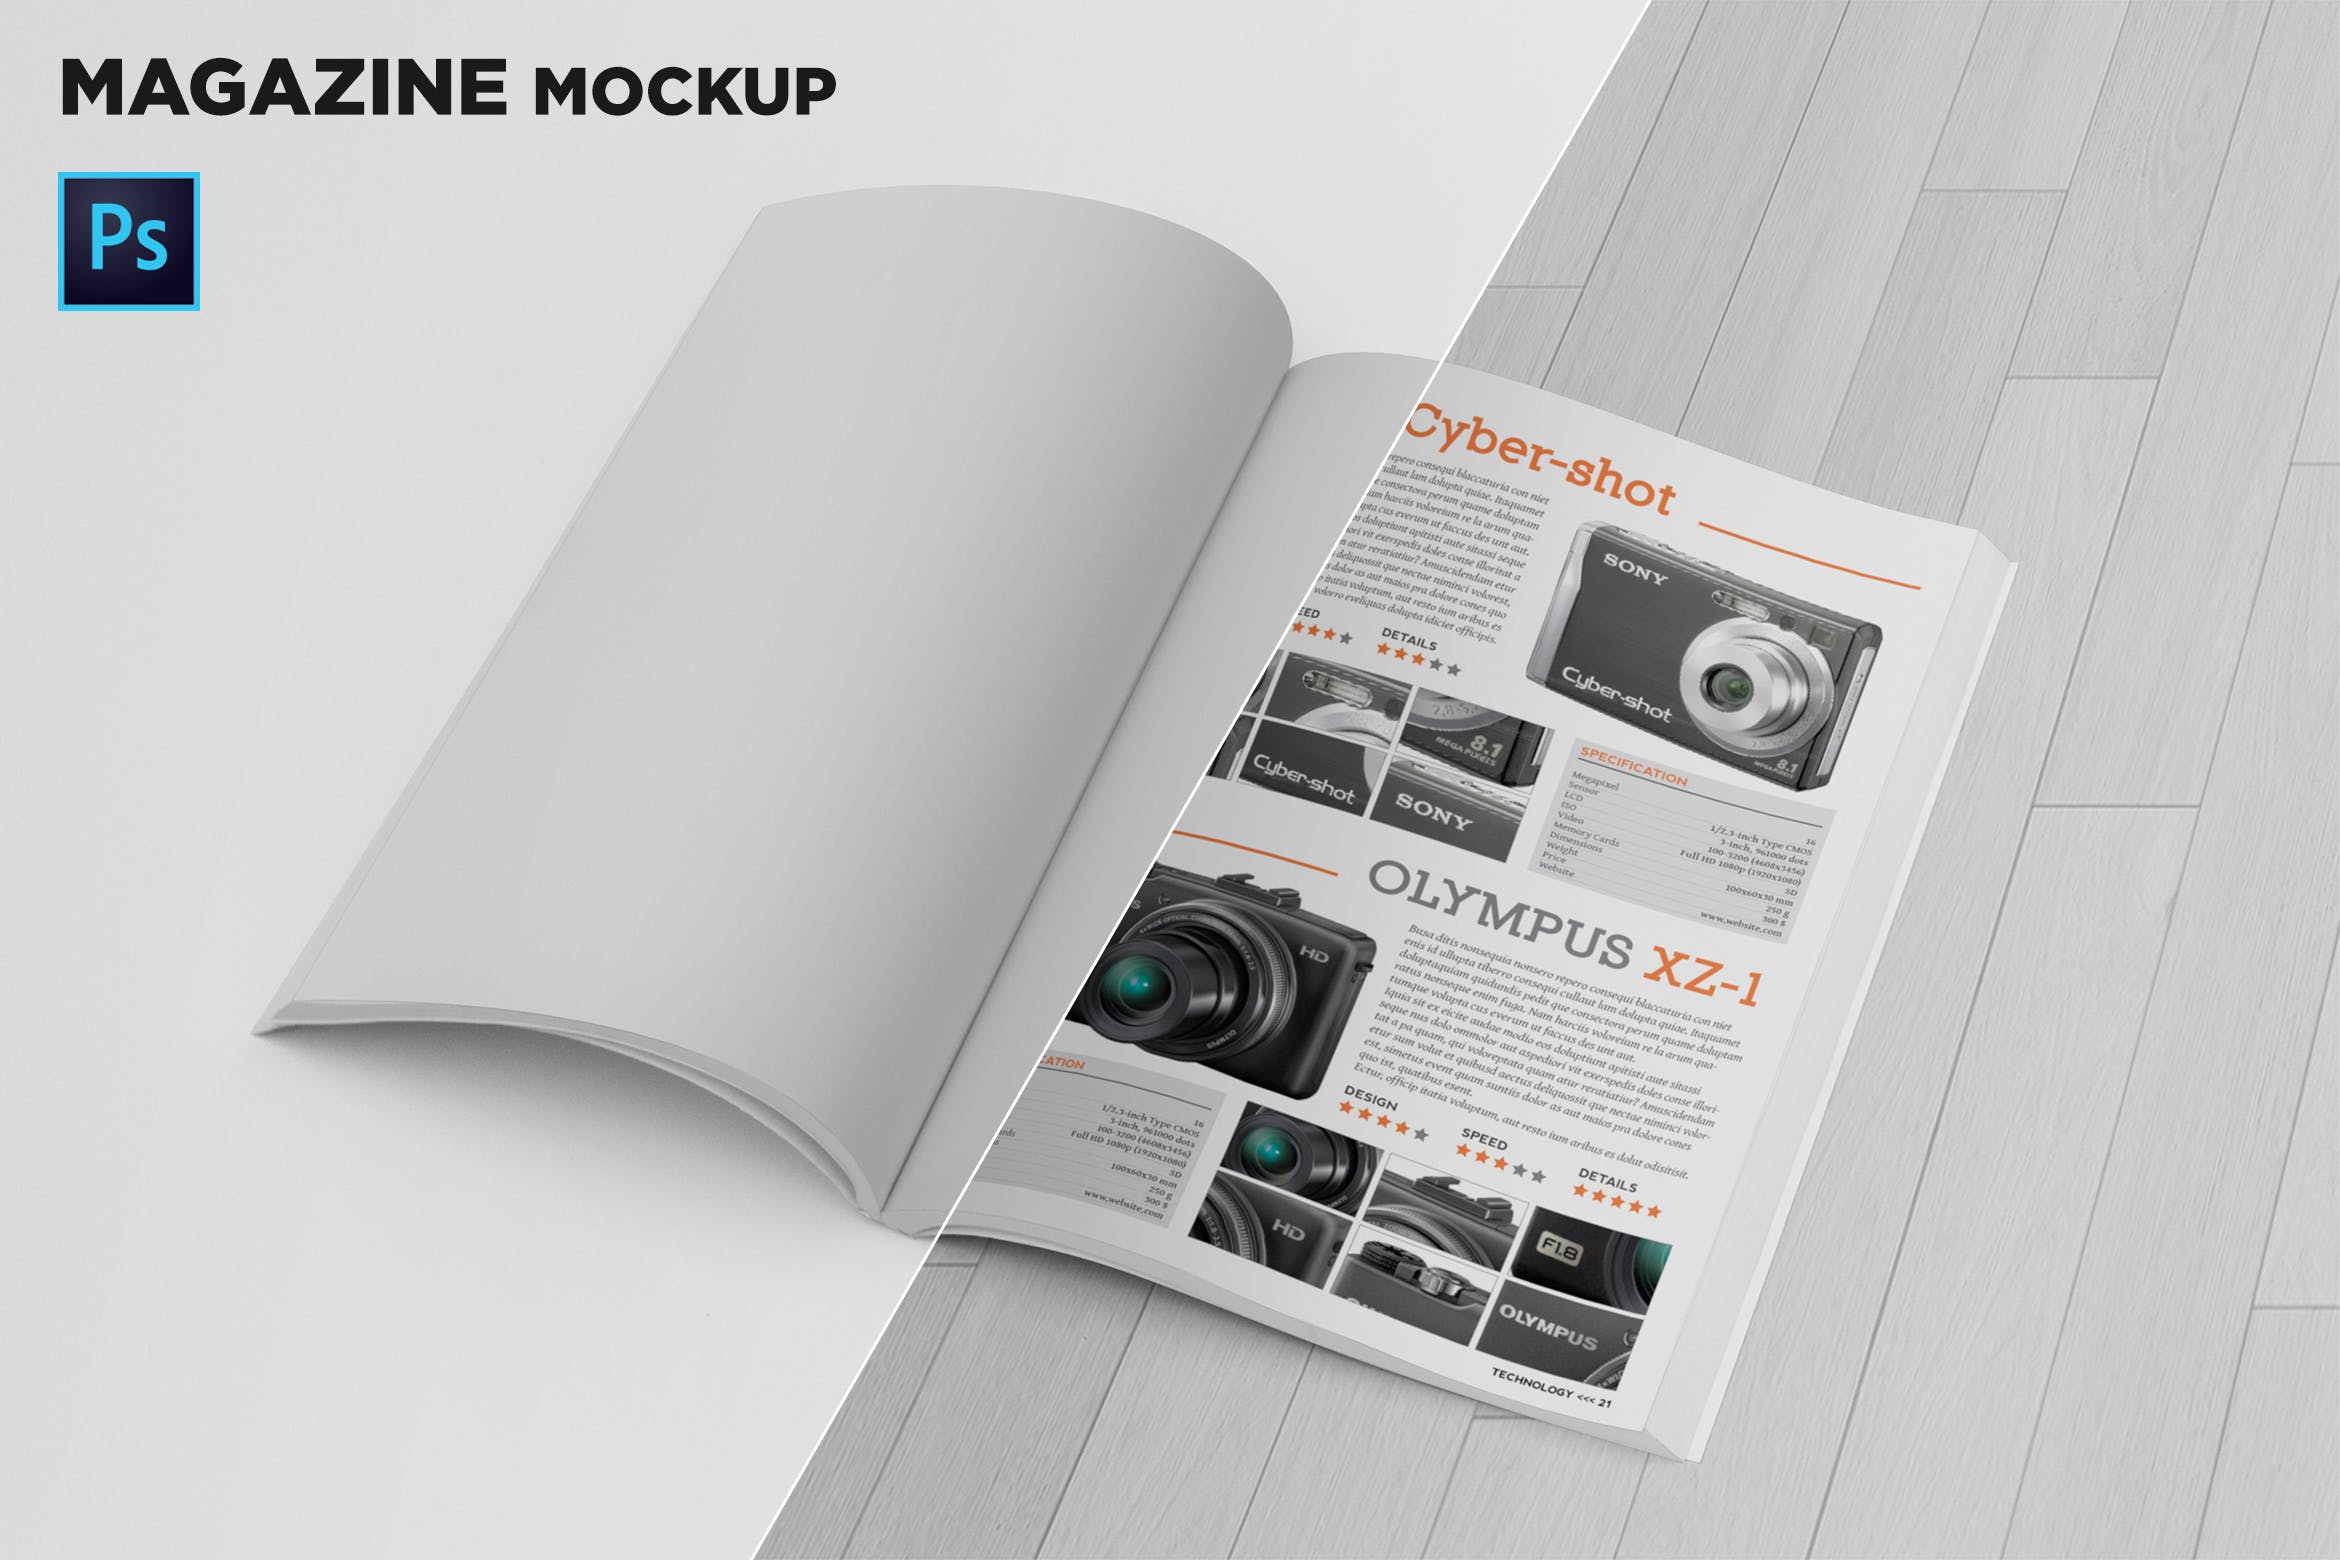 杂志内页版式设计翻页效果图样机素材库精选 Magazine Mockup Folded Page插图